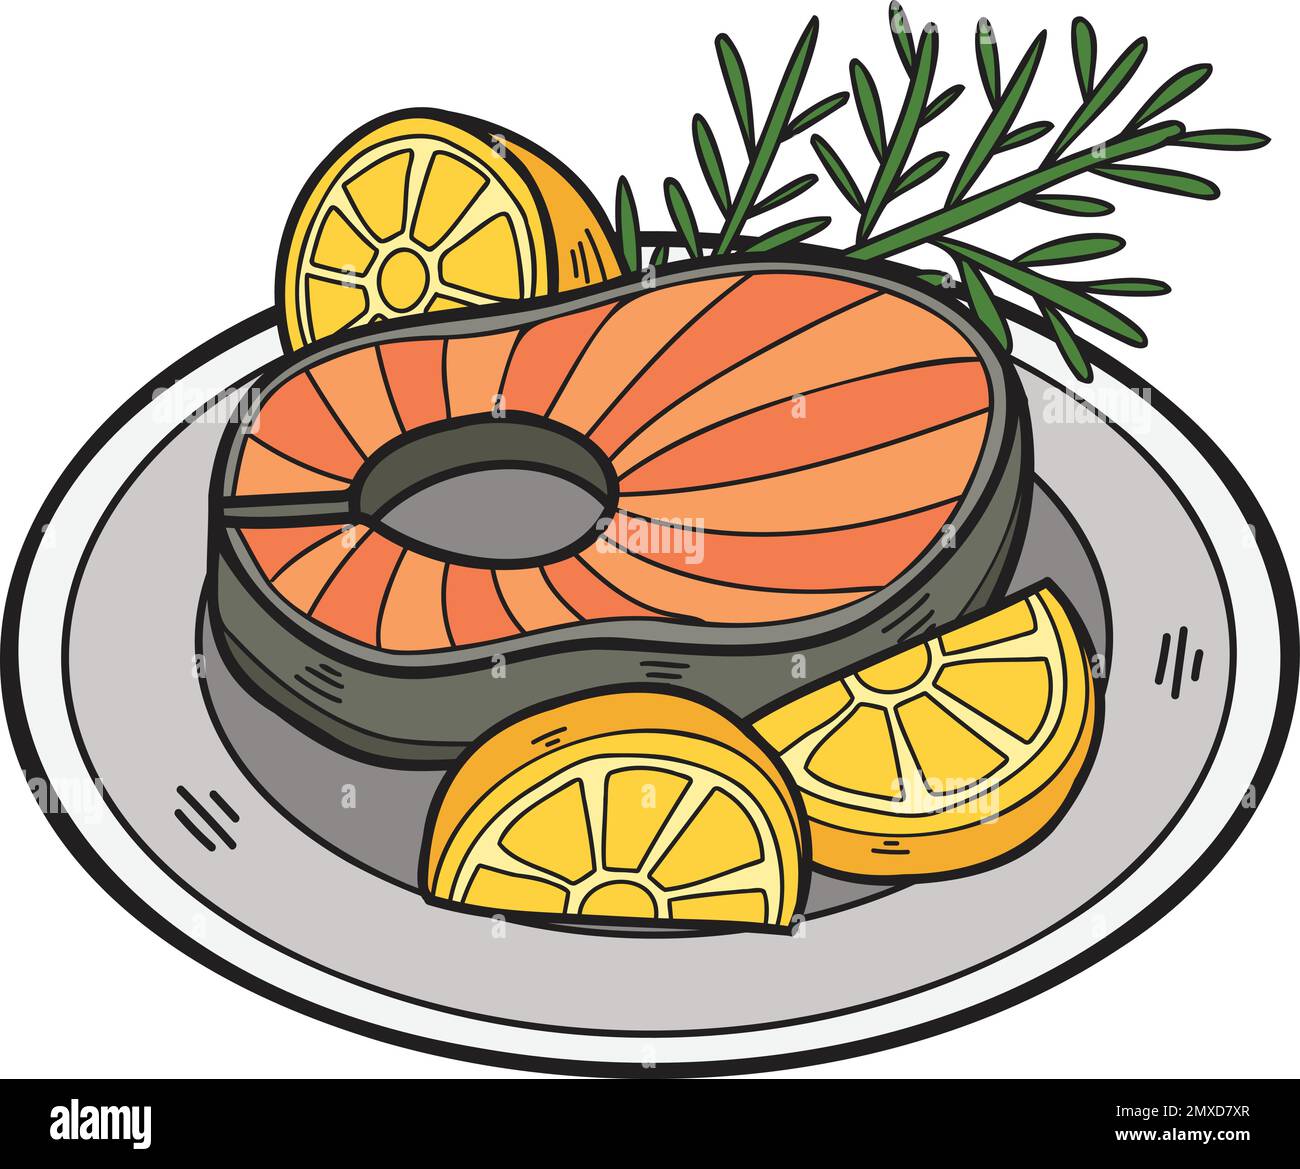 Bistecca di salmone disegnata a mano su un piatto in stile doodle isolato sullo sfondo Illustrazione Vettoriale